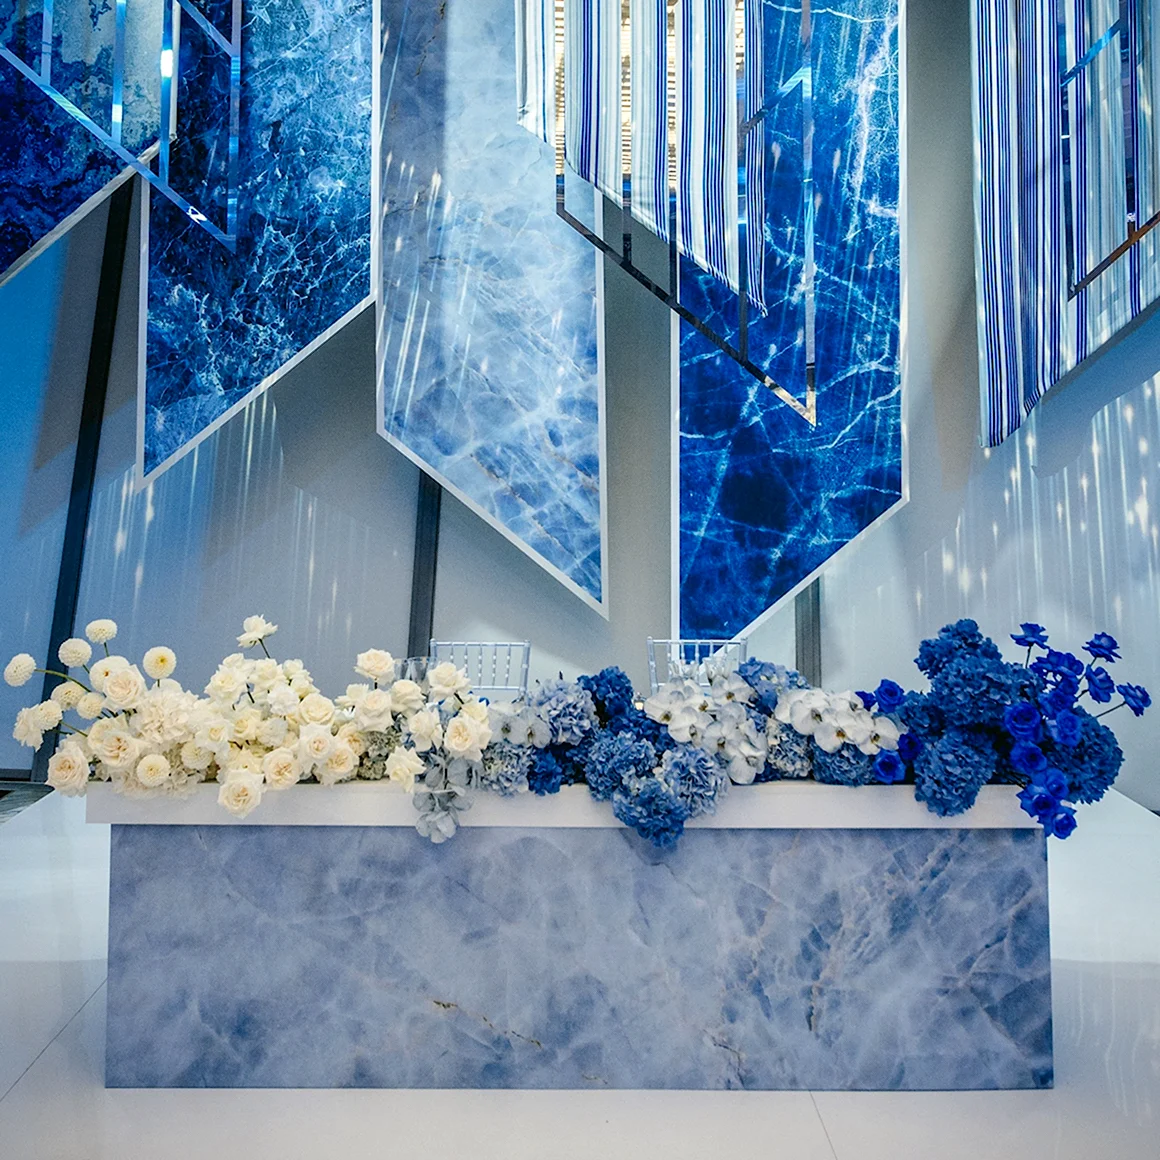 Декор свадьбы в синем цвете